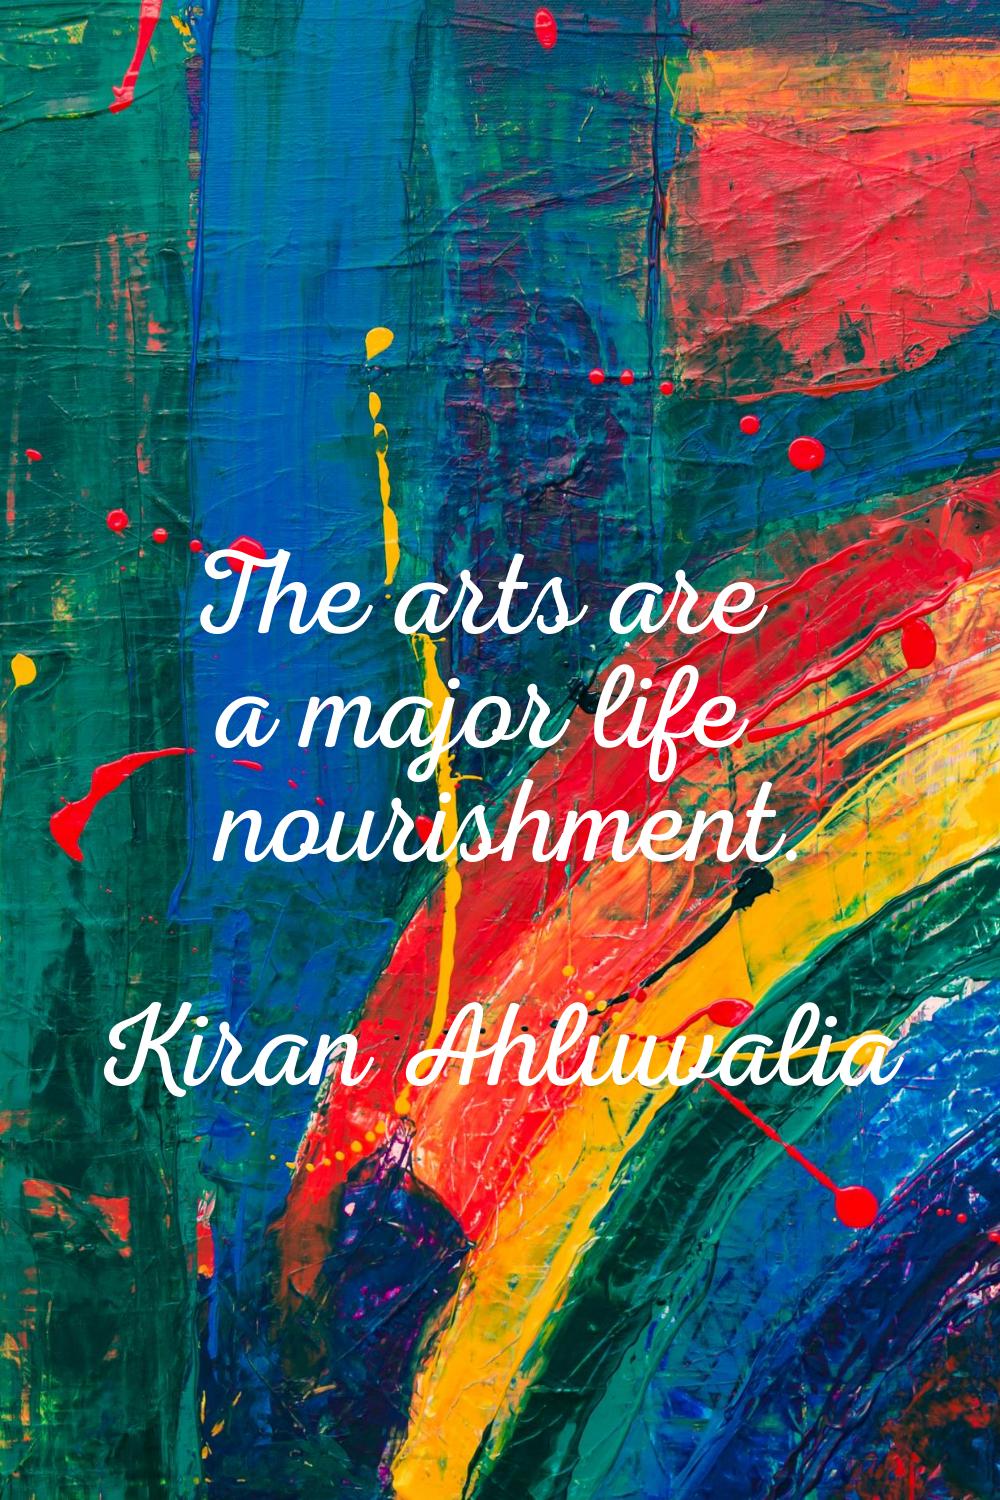 The arts are a major life nourishment.